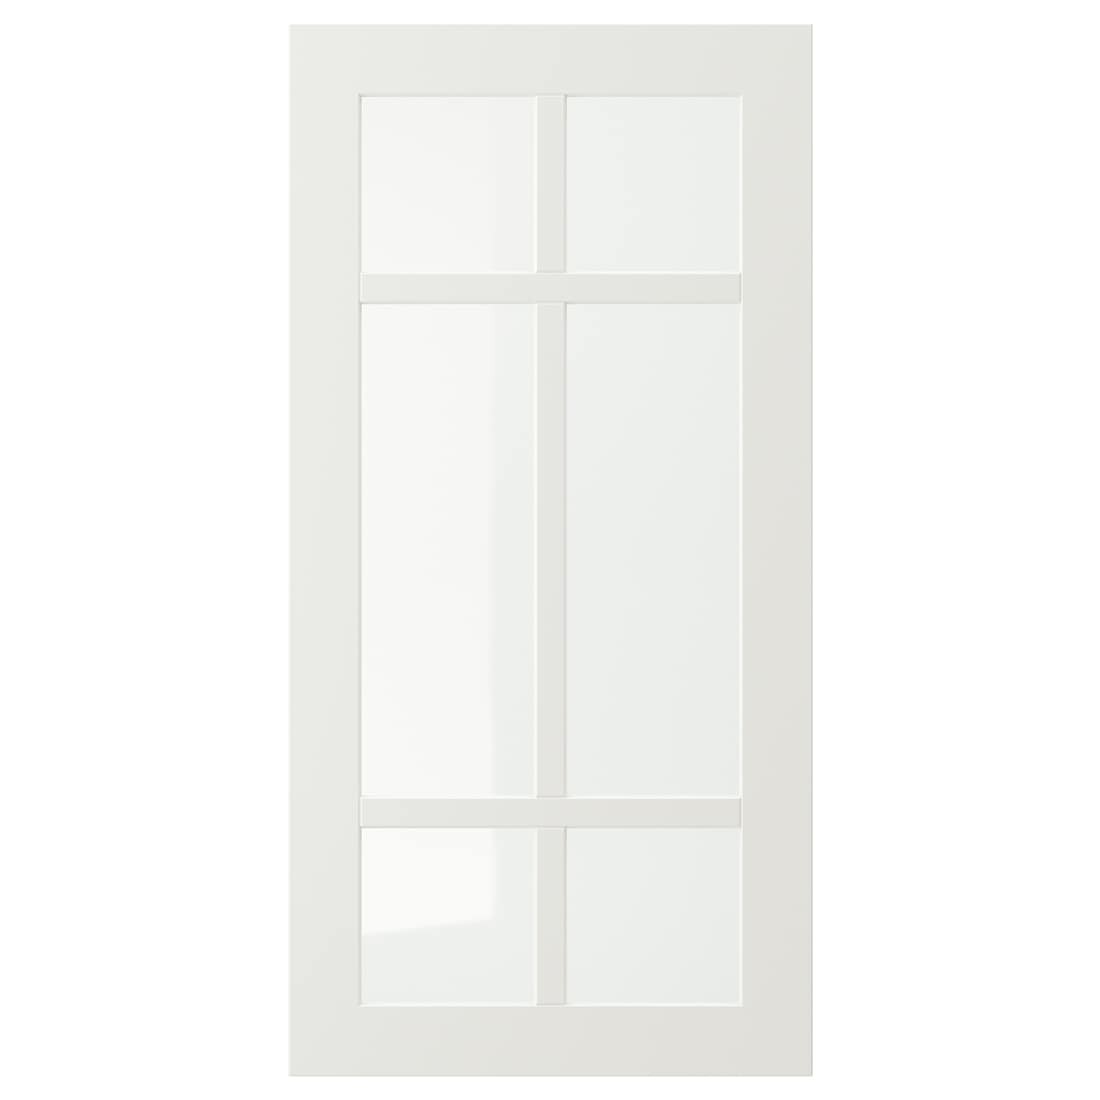 STENSUND СТЕНСУНД Стеклянная дверь, белый, 40x80 см